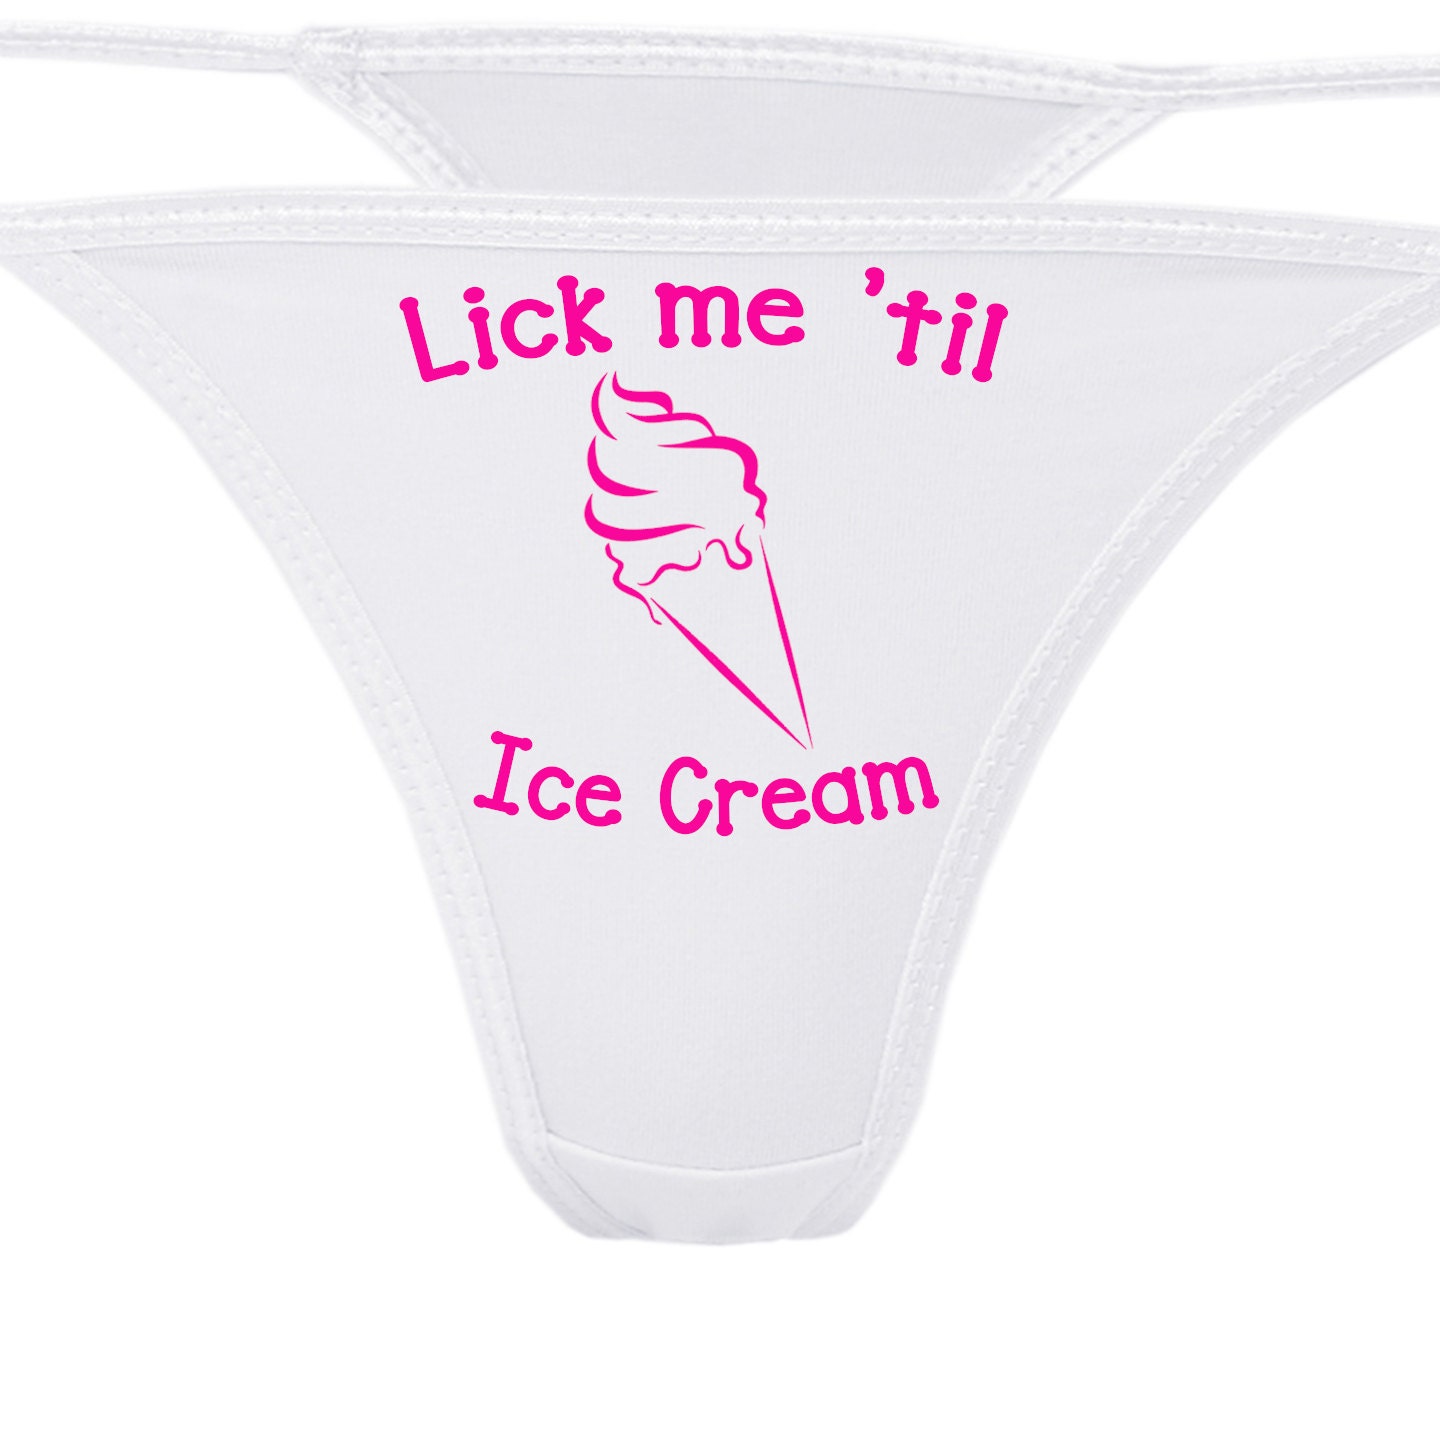 Lick me tpe